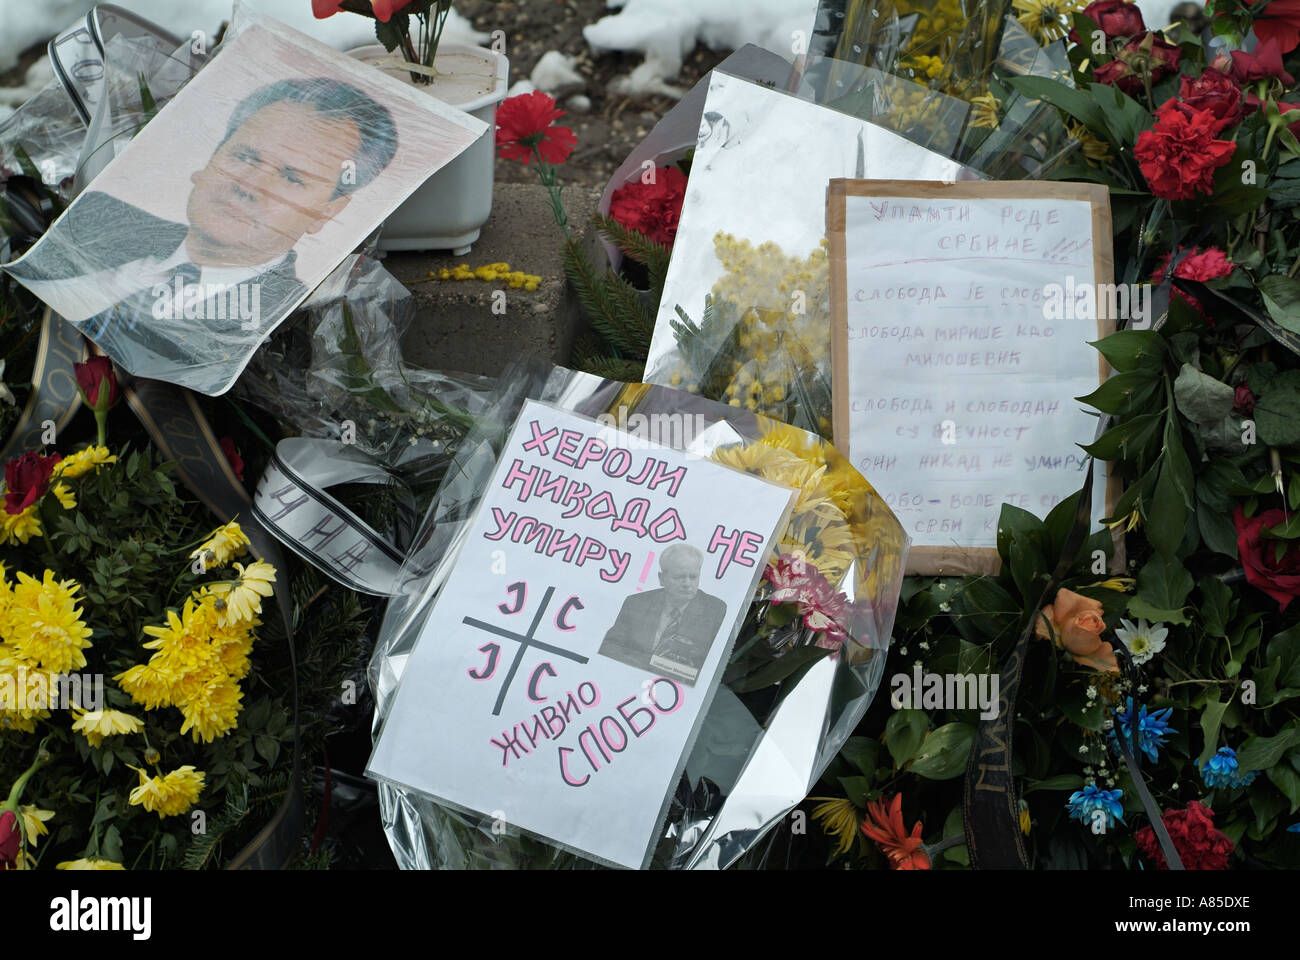 Memorial to Slobodan Milosevic in Banja Luka city centre Republika Srpska Bosnia Herzegovina Stock Photo